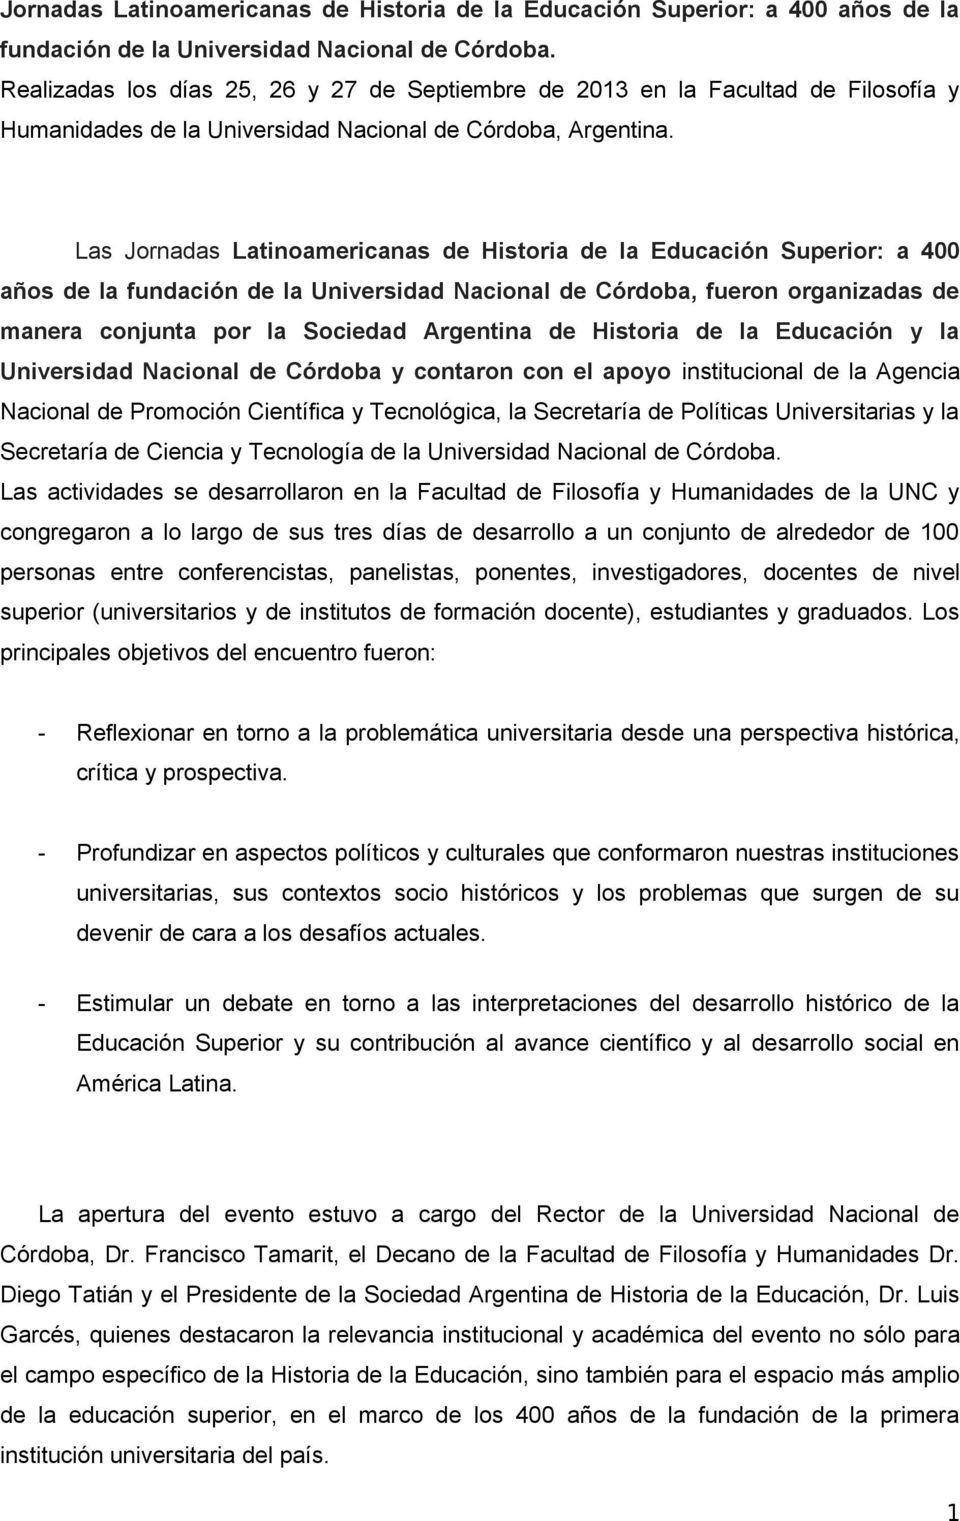 Las Jornadas Latinoamericanas de Historia de la Educación Superior: a 400 años de la fundación de la Universidad Nacional de Córdoba, fueron organizadas de manera conjunta por la Sociedad Argentina